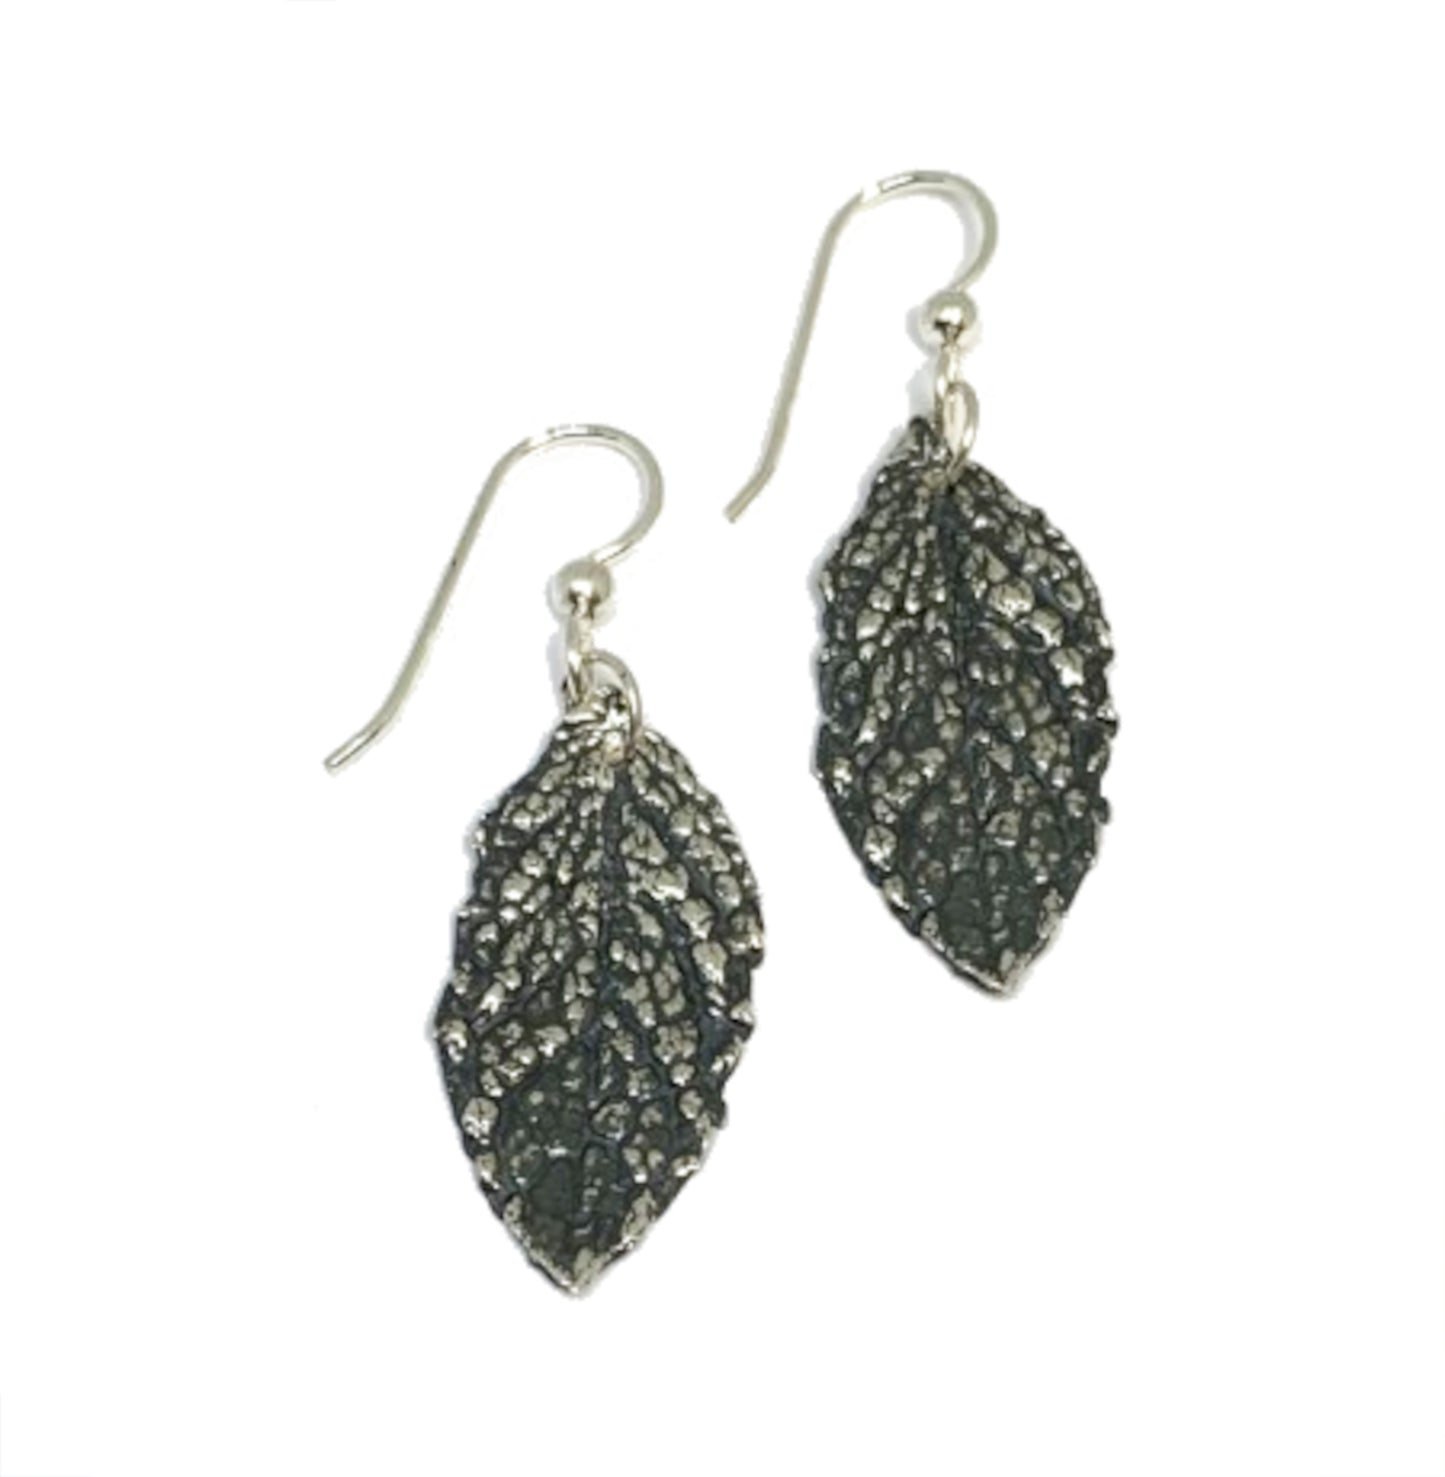 Mint Leaf Earrings in Sterling Silver